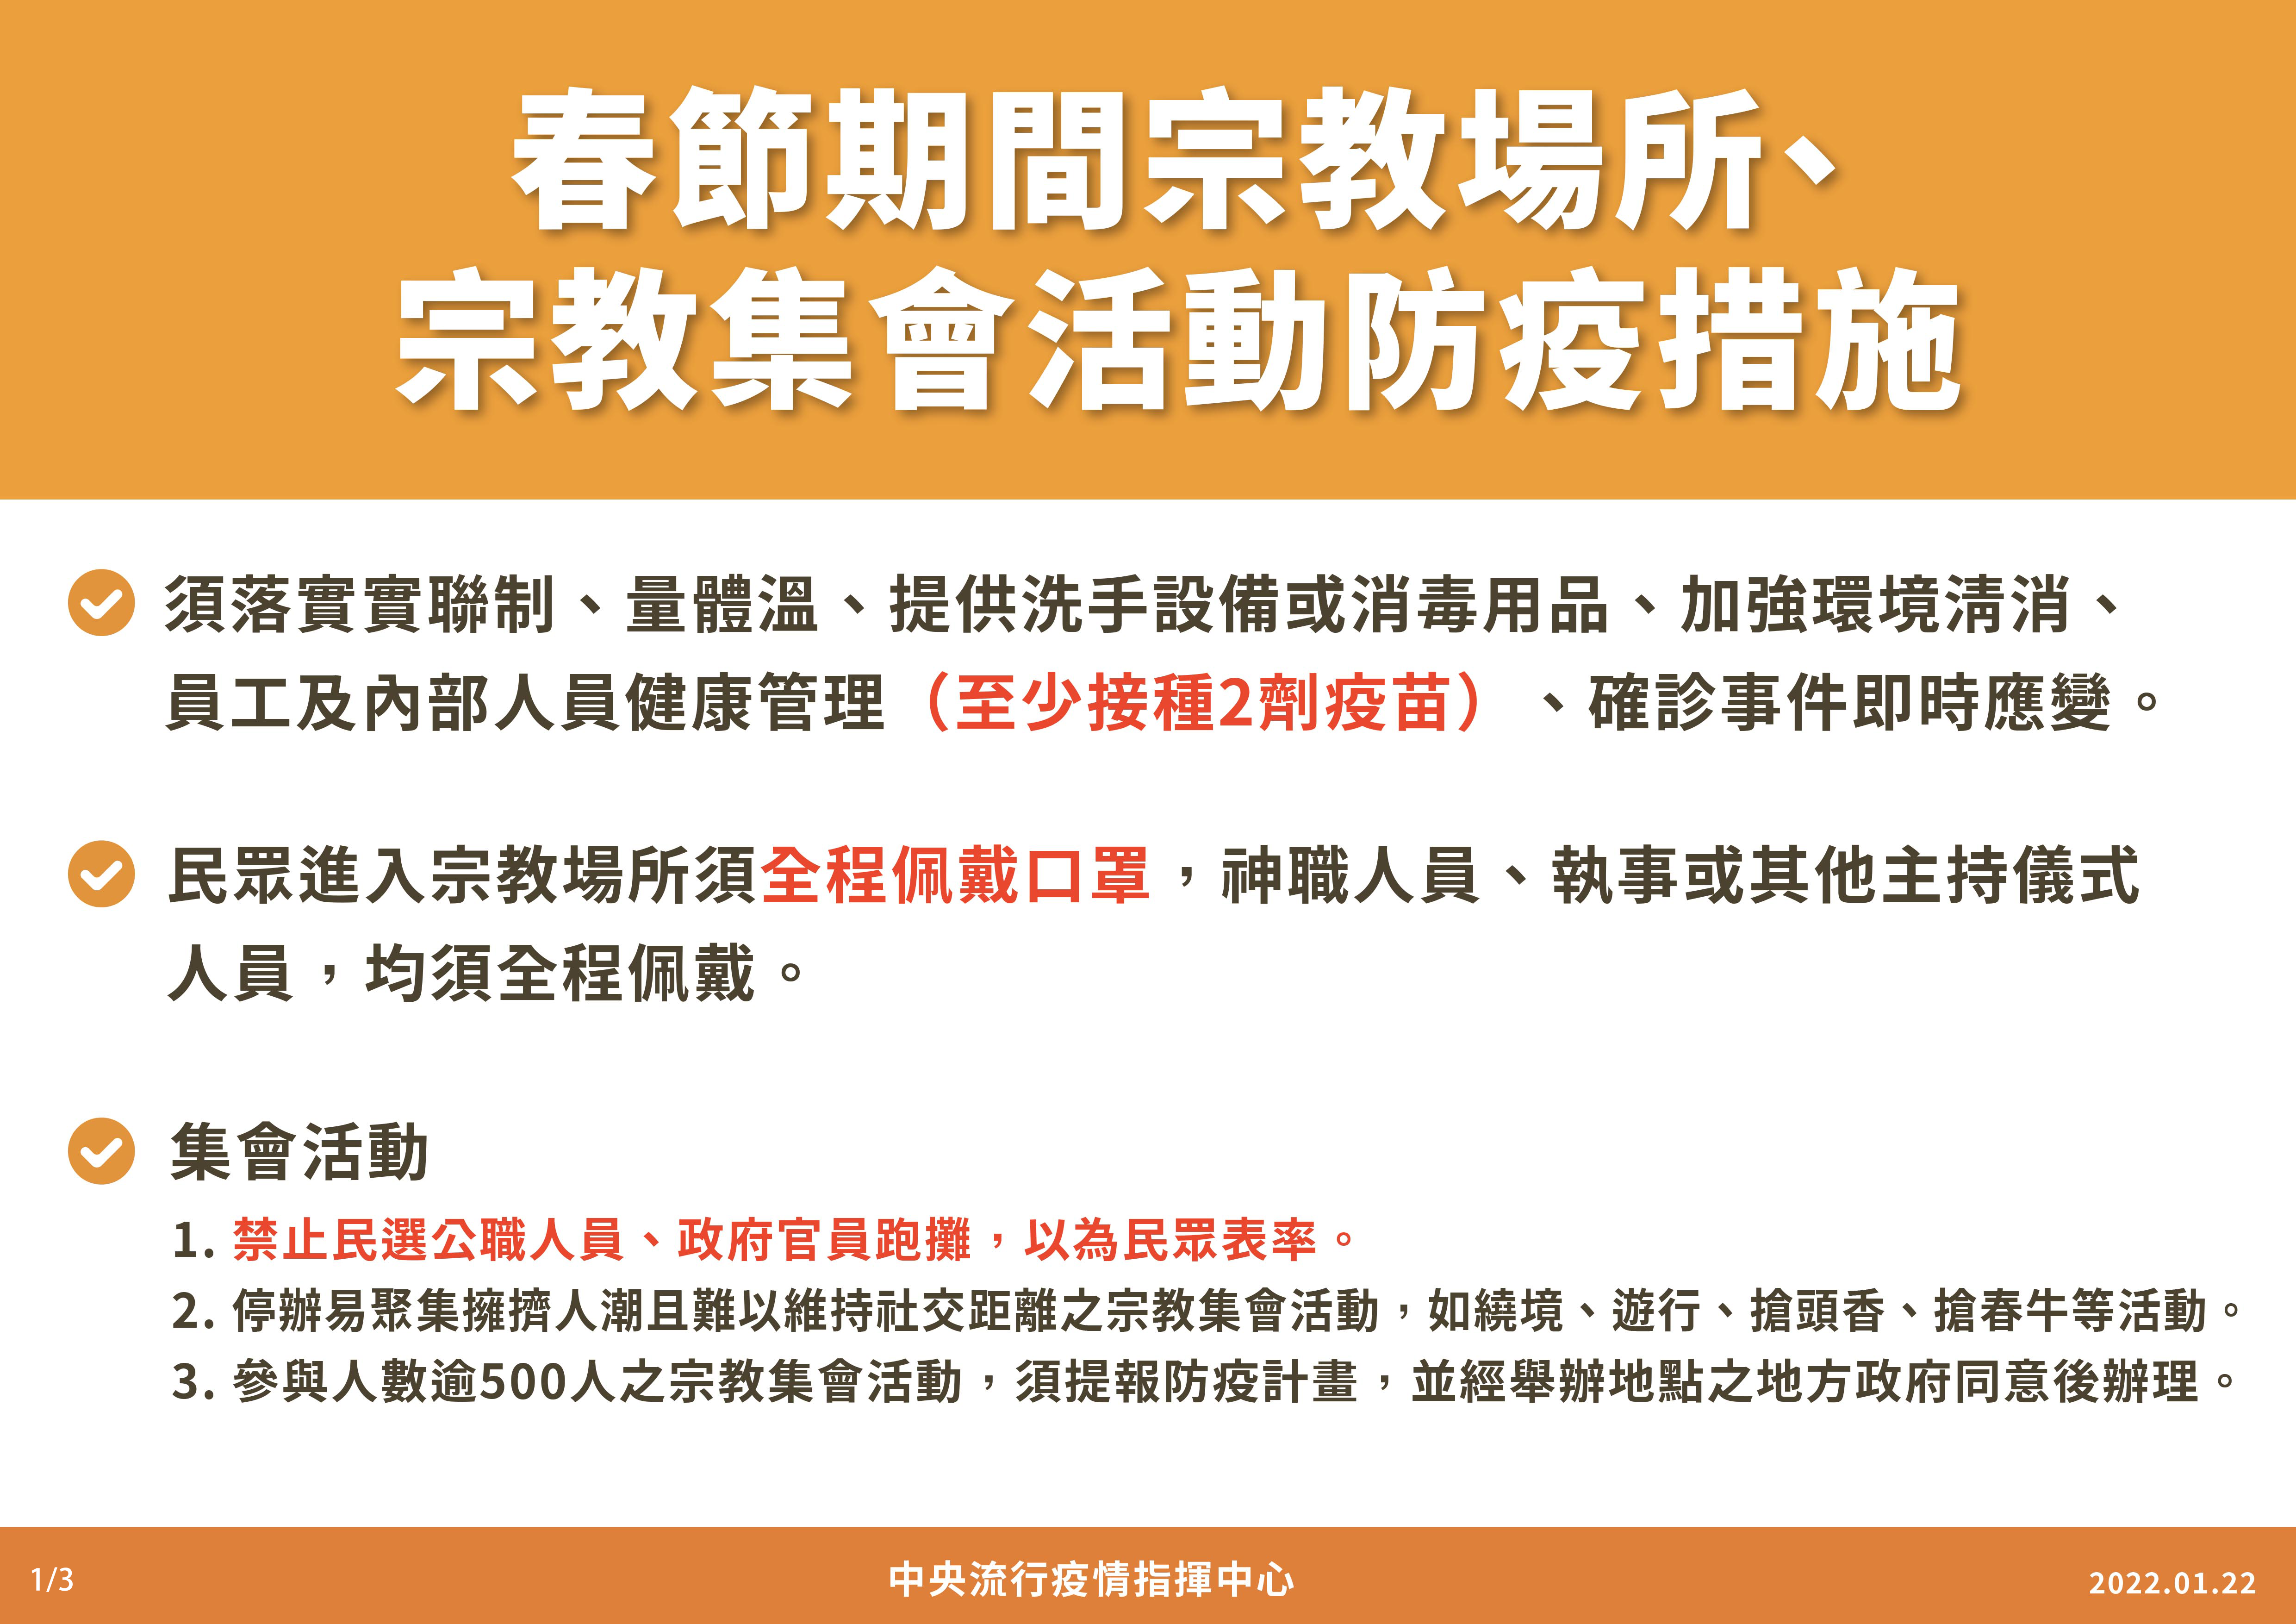 มาตรการป้องกันโรคระบาดในศาสนสถานในช่วงเทศกาลตรุษจีน ภาพจาก／ศูนย์บัญชาการควบคุมโรคไต้หวัน (CECC)